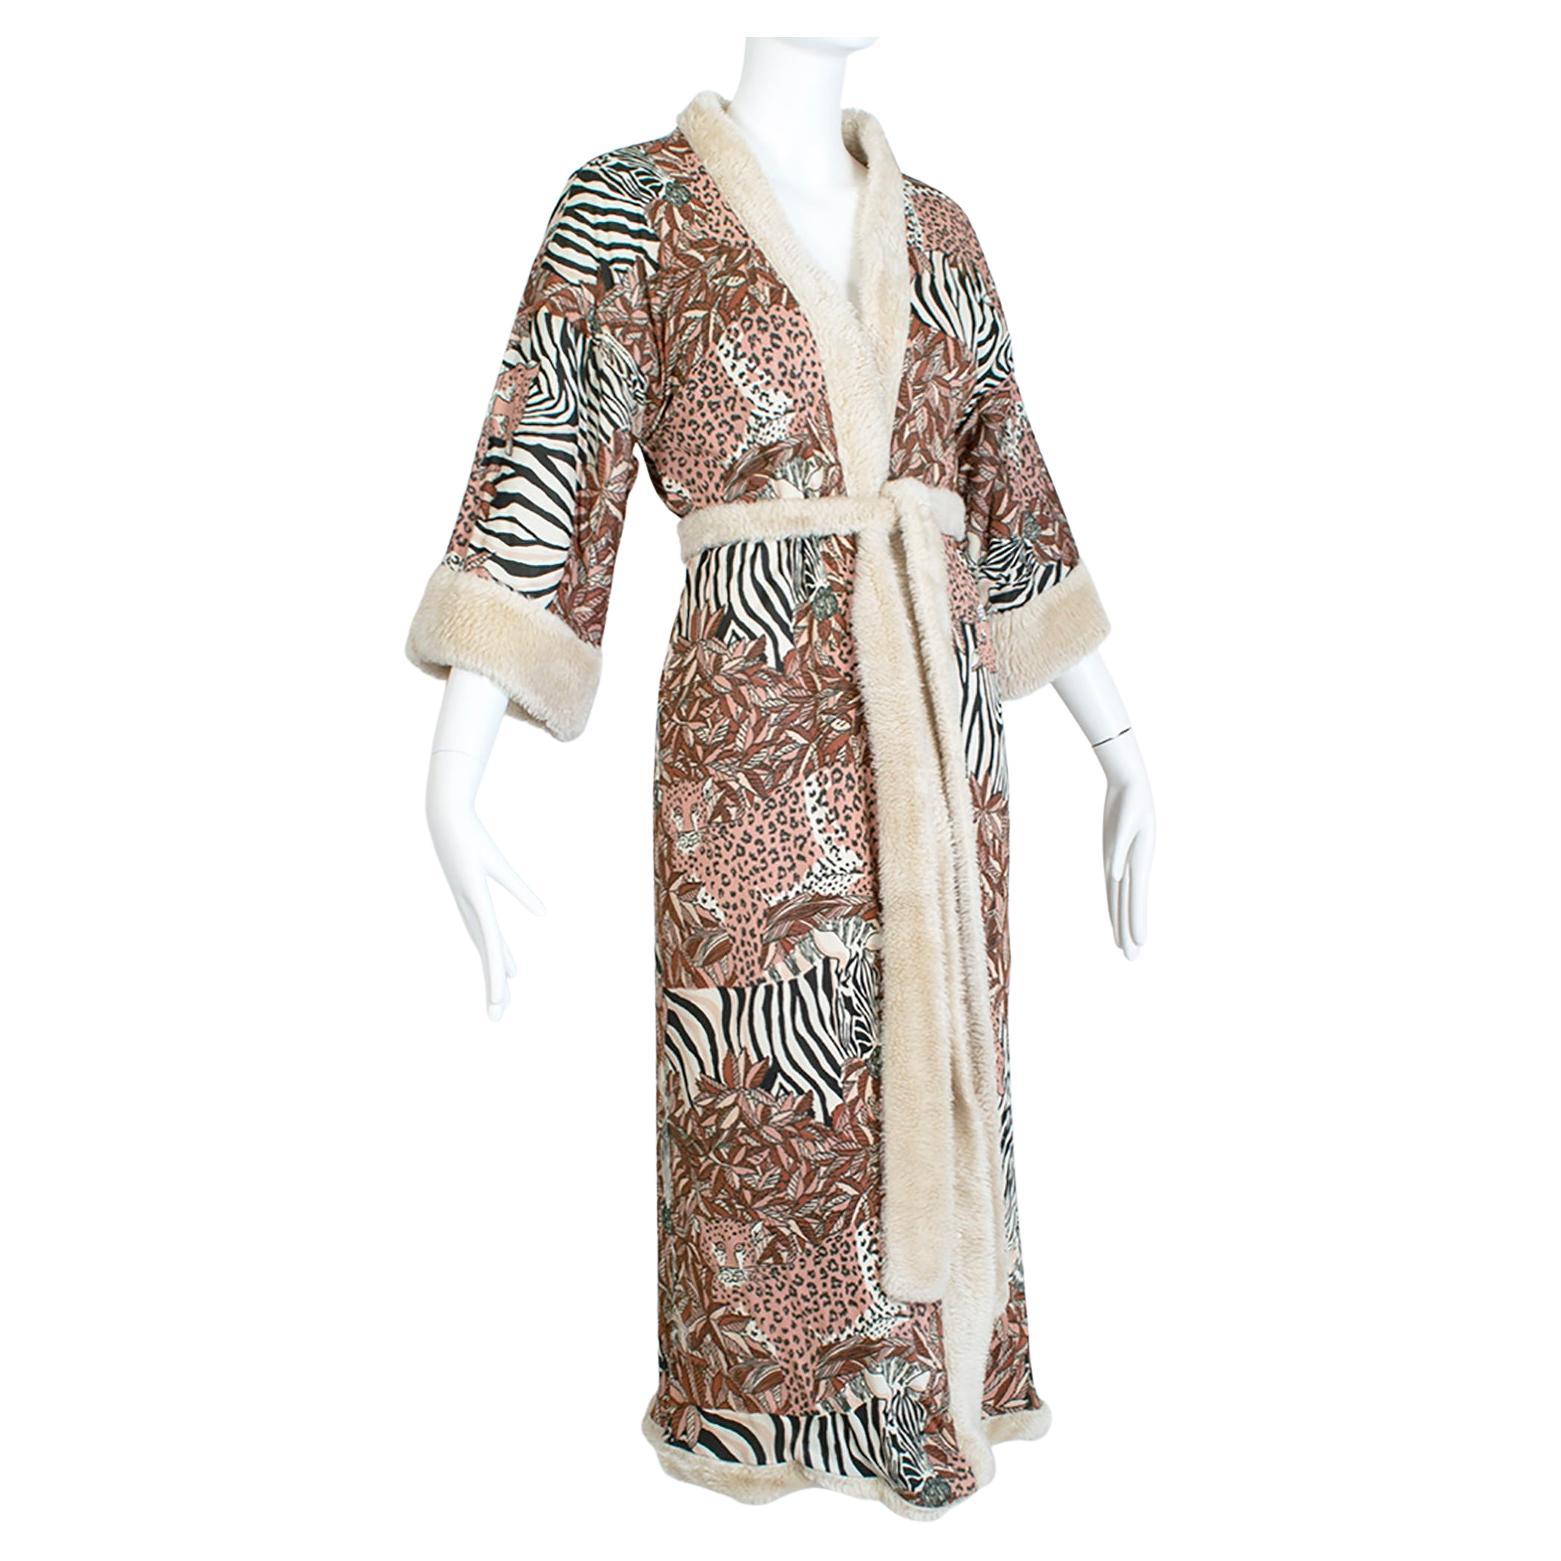 Robe réversible en fausse fourrure ivoire avec doublure Jungle inspirée de Leonard Paris, Taille M, années 1960